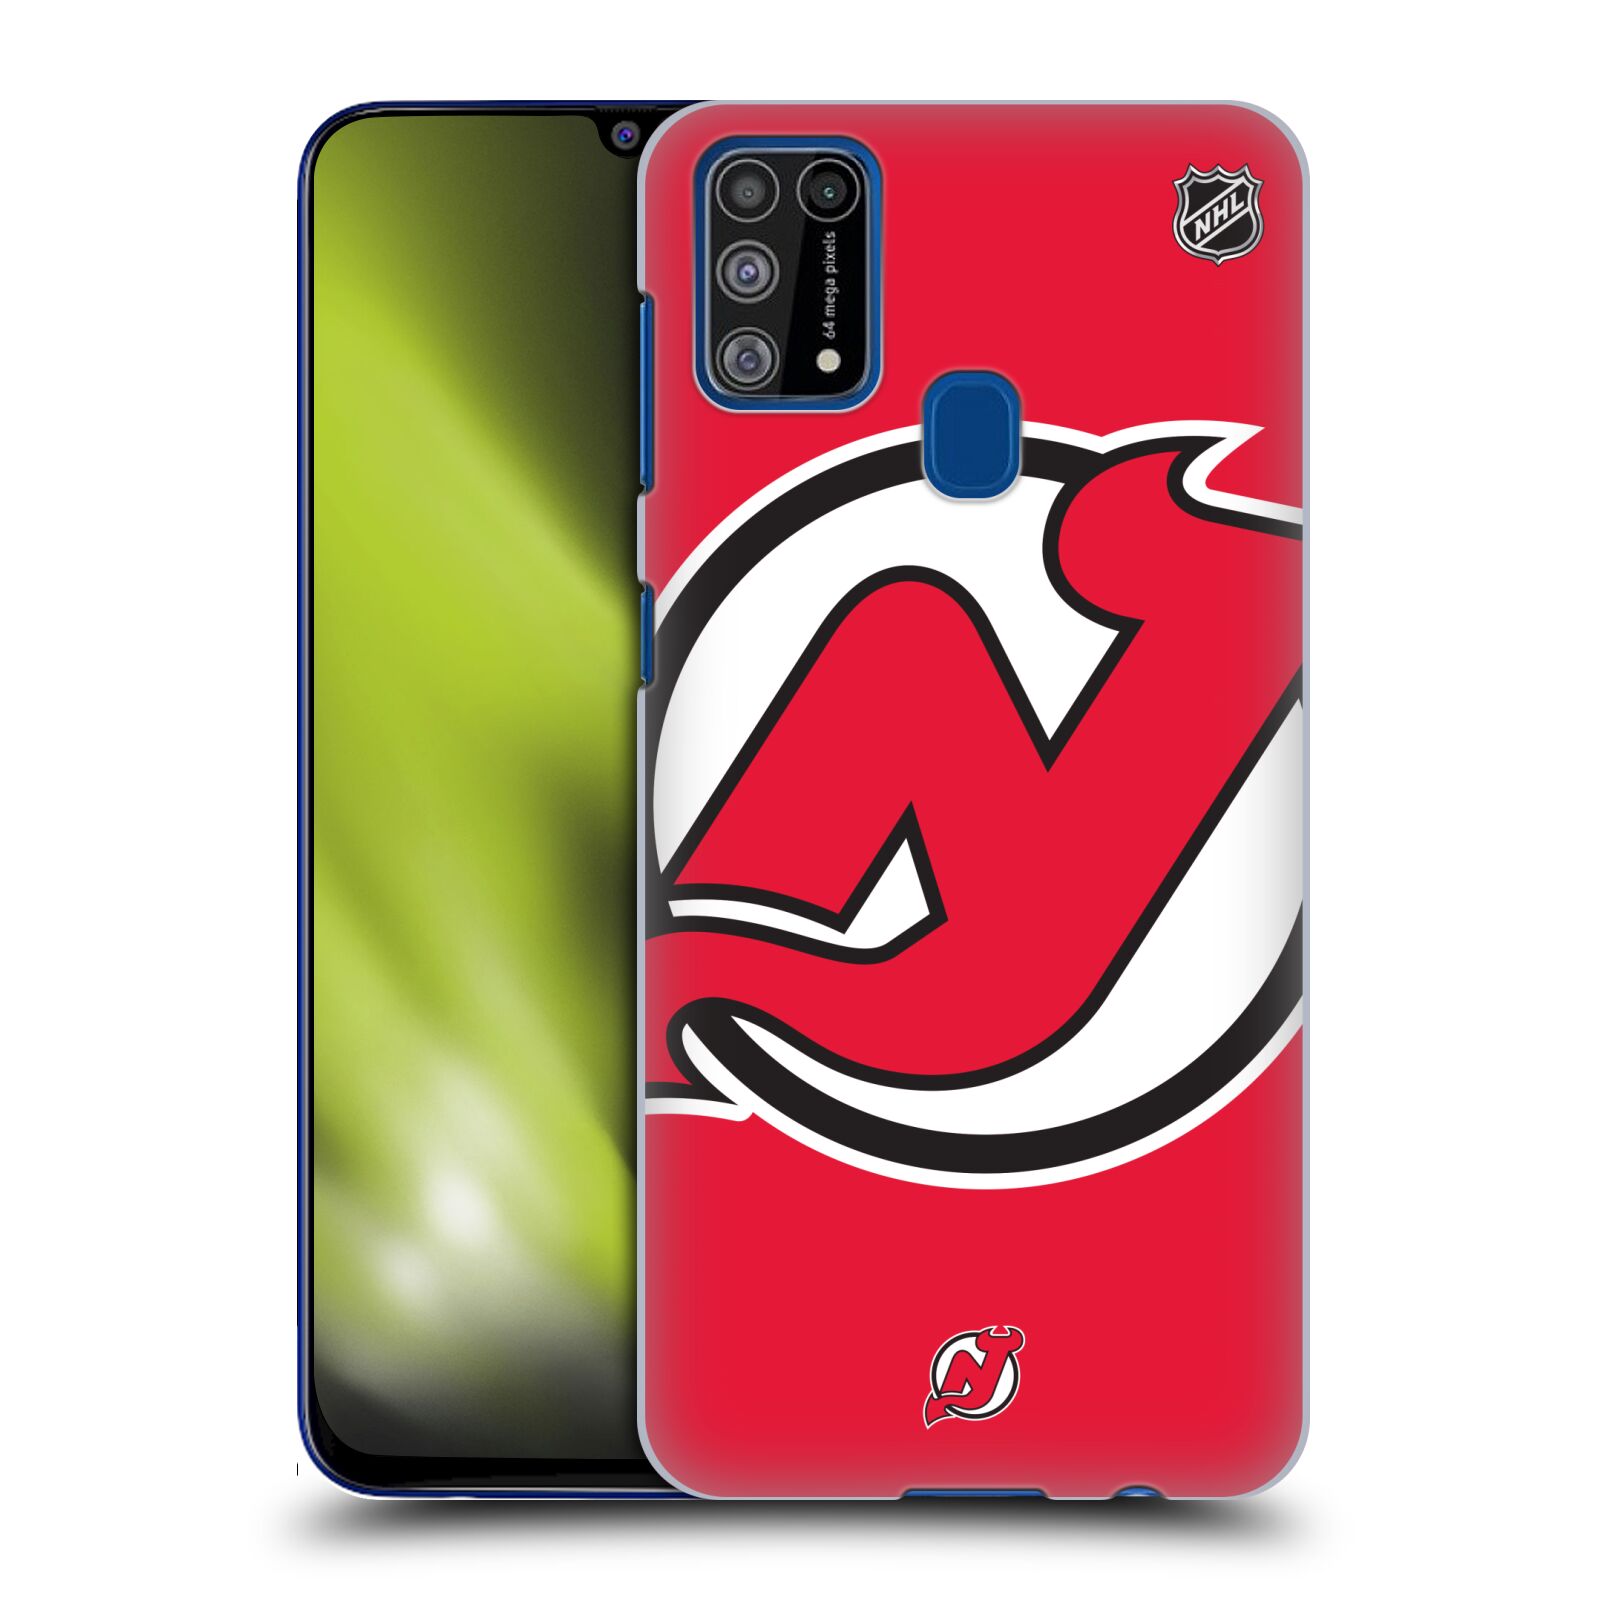 Pouzdro na mobil Samsung Galaxy M31 - HEAD CASE - Hokej NHL - New Jersey Devils - Velký znak